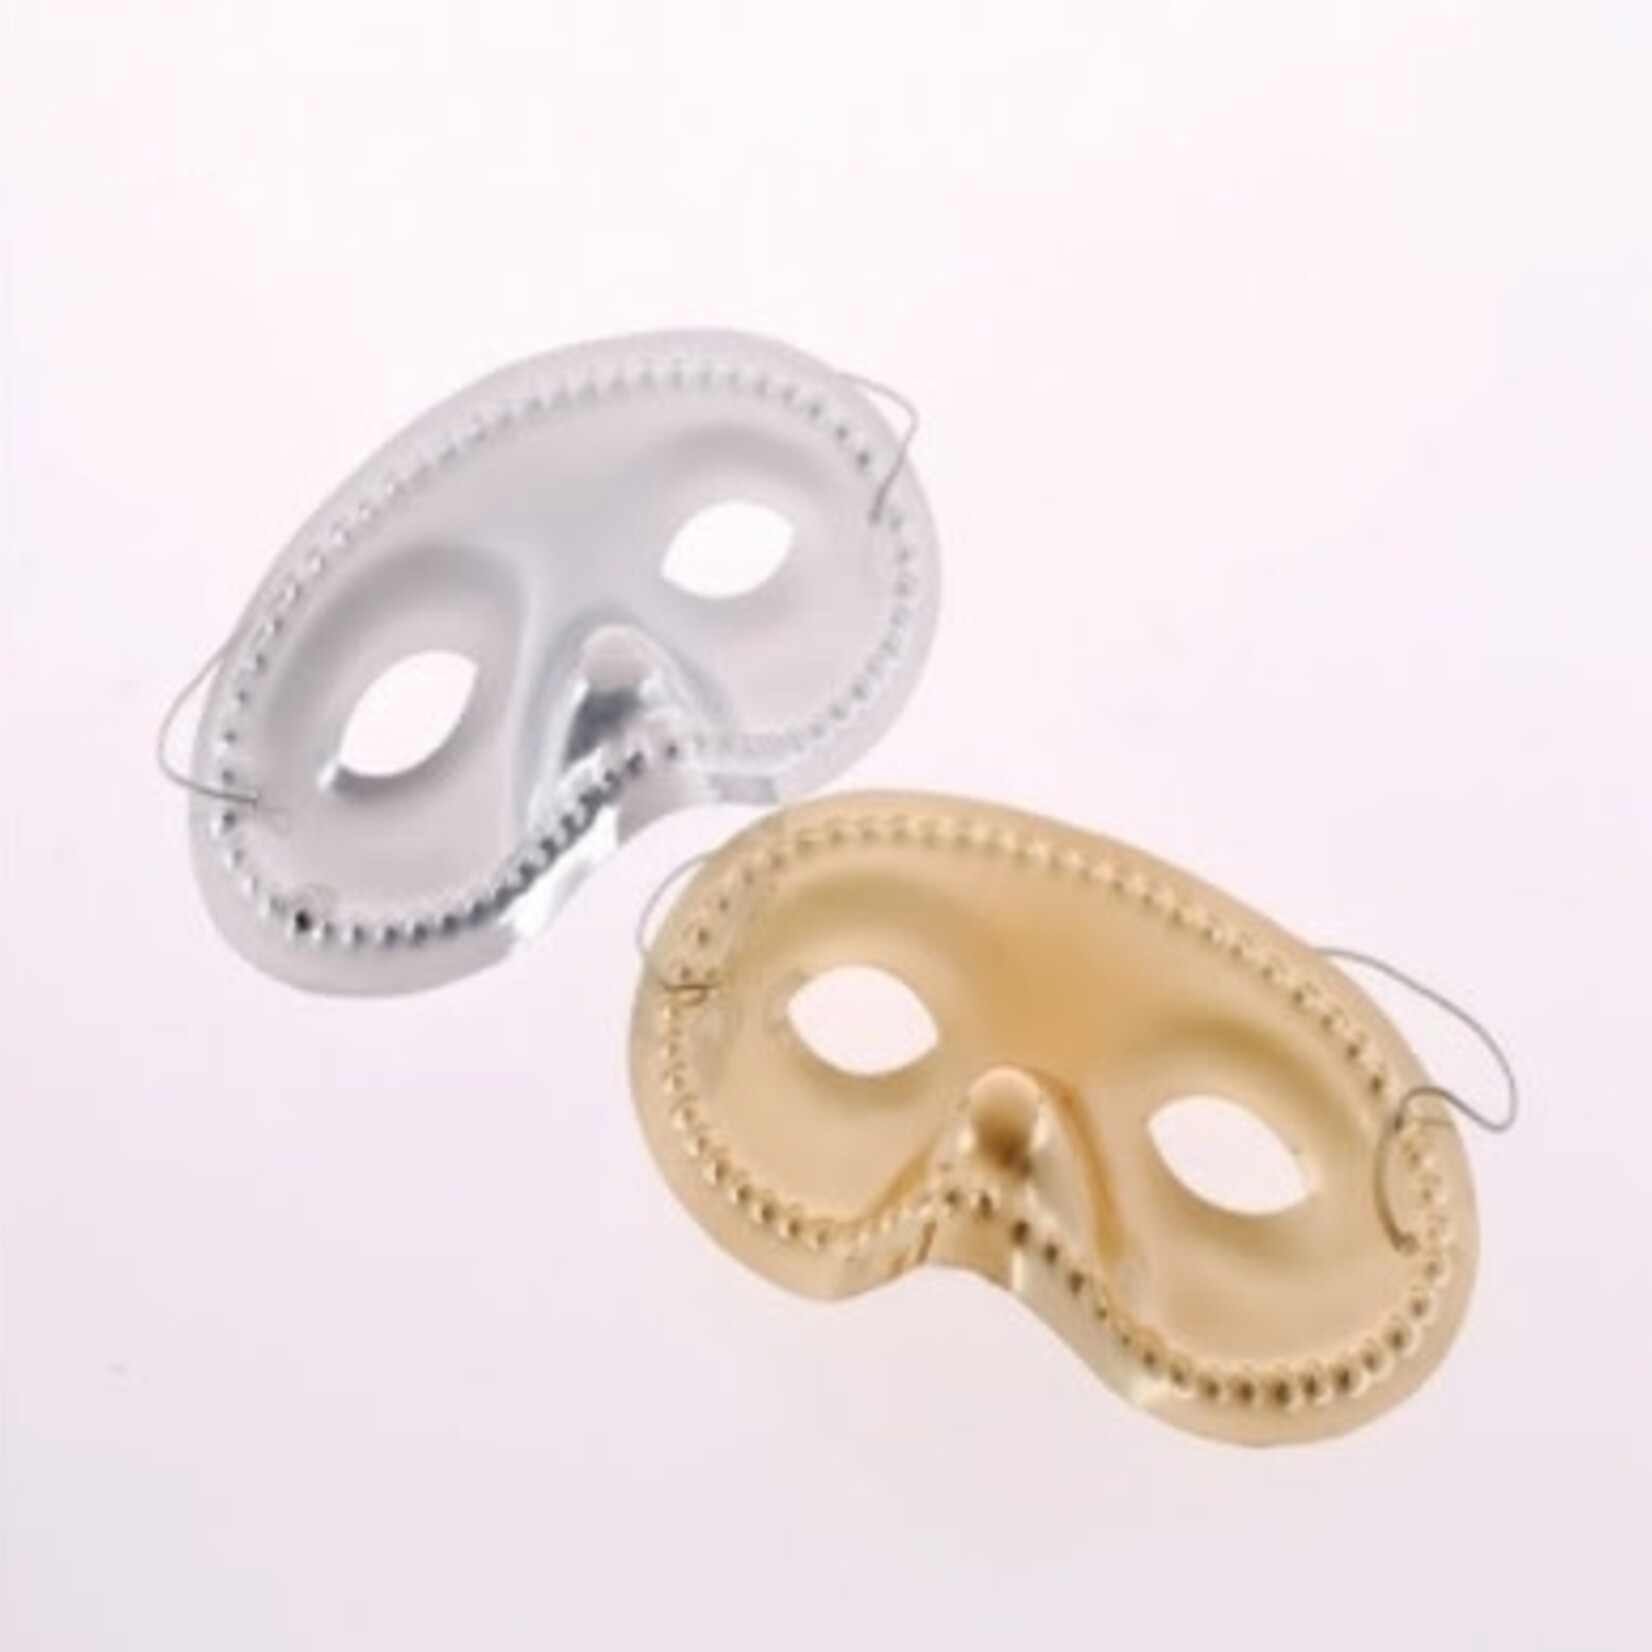 Economy Eye Masks 3.5 x 6.25 Inch